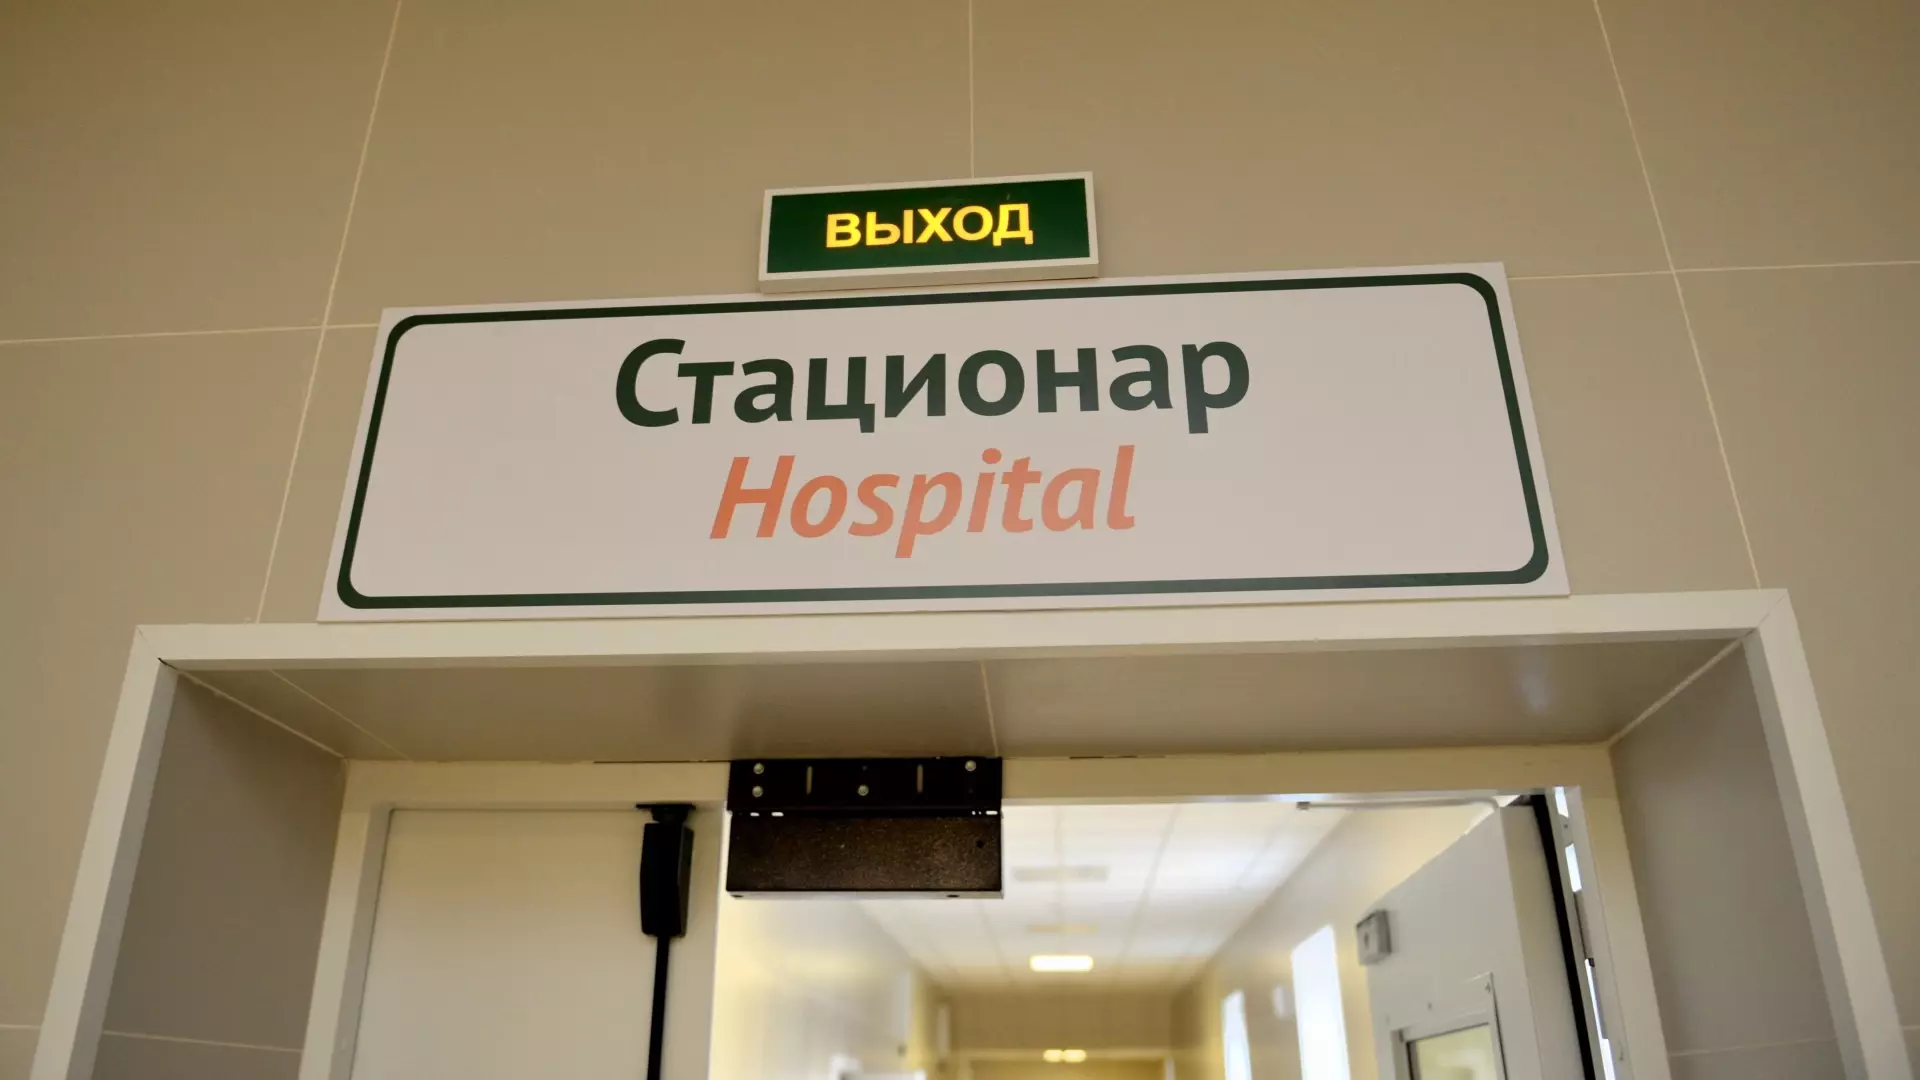 Пациентка едва не умерла от аппендицита, пока ждала проведения КТ в Волгограде